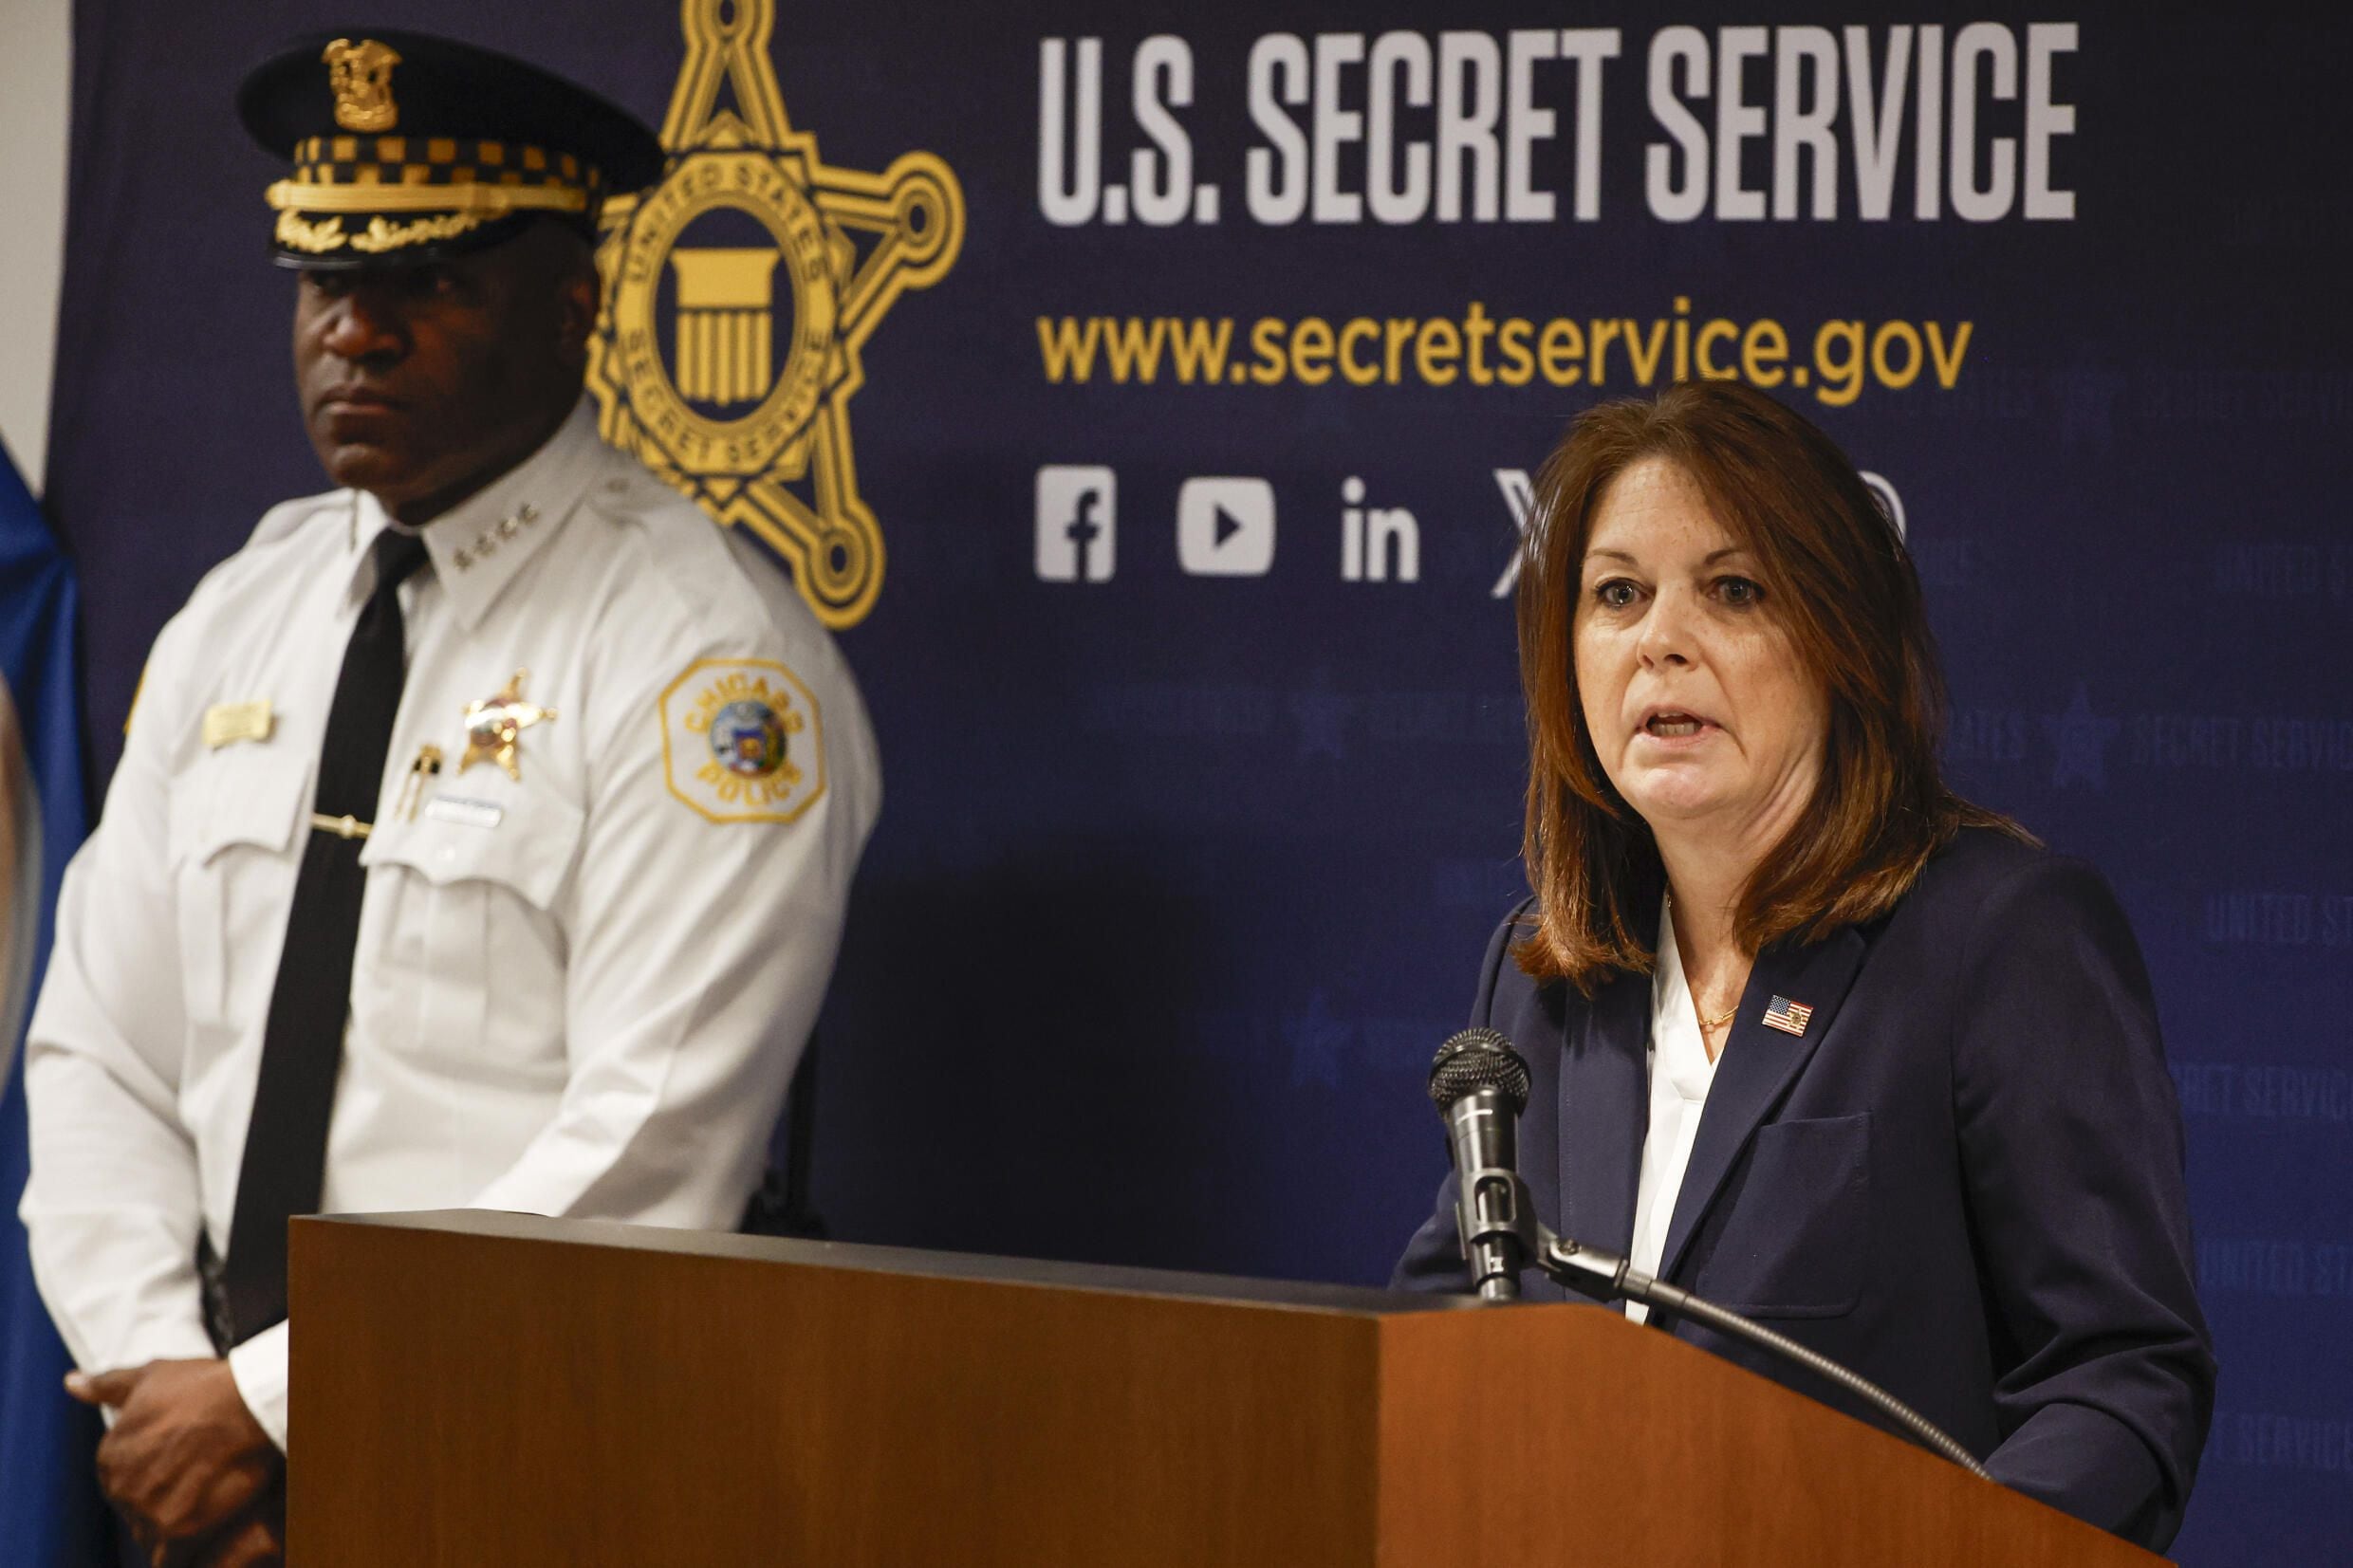 Kimberly Cheatle, directora del Servicio Secreto, defendió el programa de inclusión DEI después del intento de asesinato que sufrió Donald Trump el sábado. Foto: Kamil Krzaczynski/AFP